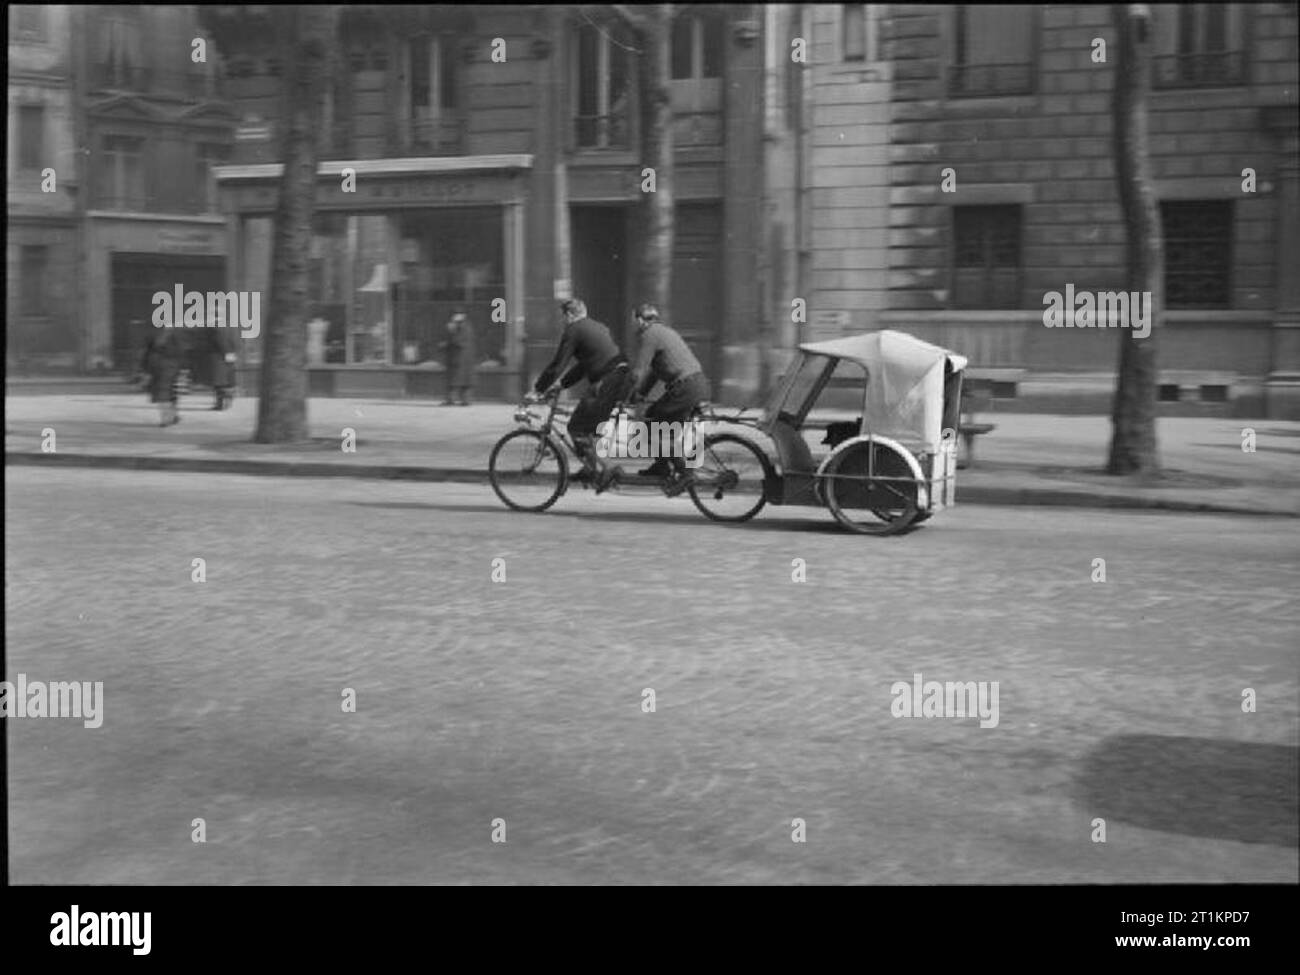 Paris, Spring 1945 - Alltag in Paris, Frankreich, 1945 ein 'Super Velo taxi" am Zielpfosten Kamera auf einer Straße in Paris, Frankreich. Dieses Velo Taxi hat zusätzliche Leistung, wie es 'Driven' von zwei Männern reiten ein Tandem. Die meisten Velo Taxis sind 'Driven' durch einen einzelnen Radfahrer auf einem normalen Fahrrad. Stockfoto